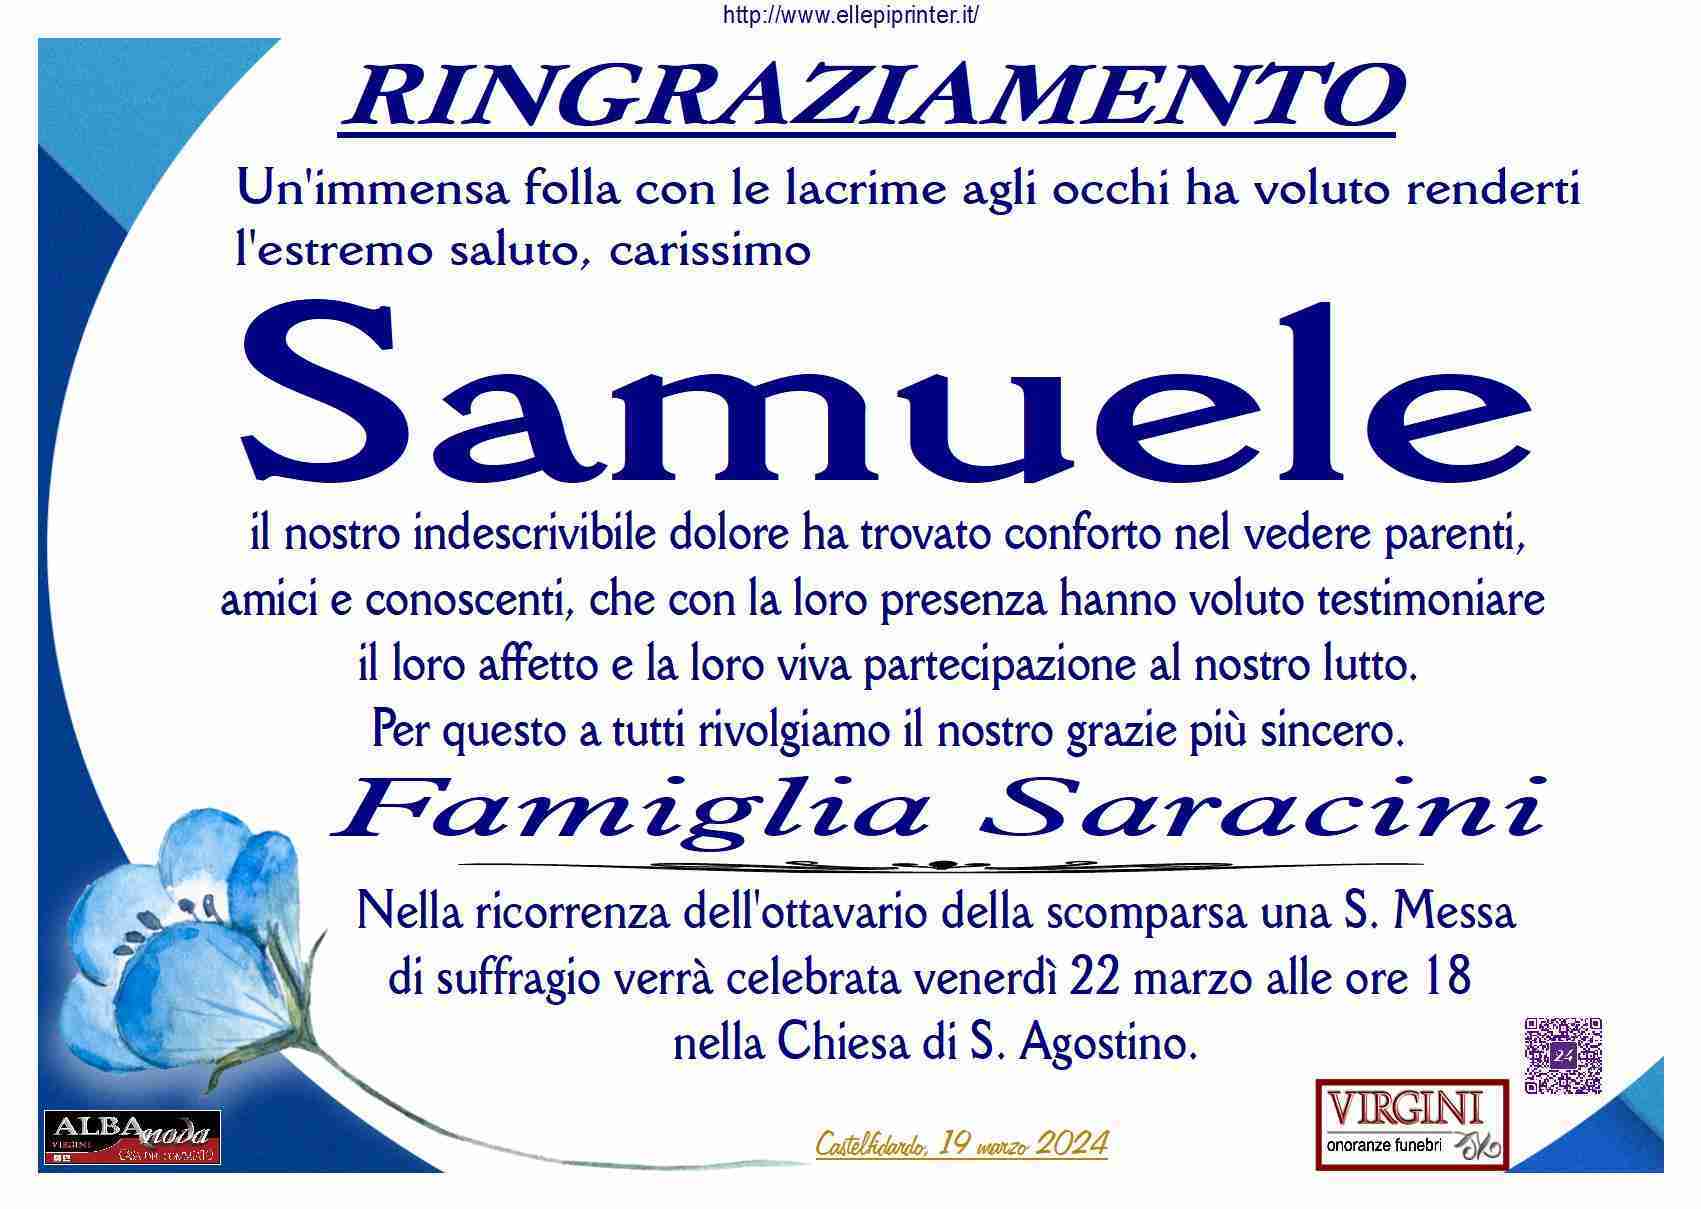 Samuele Saracini